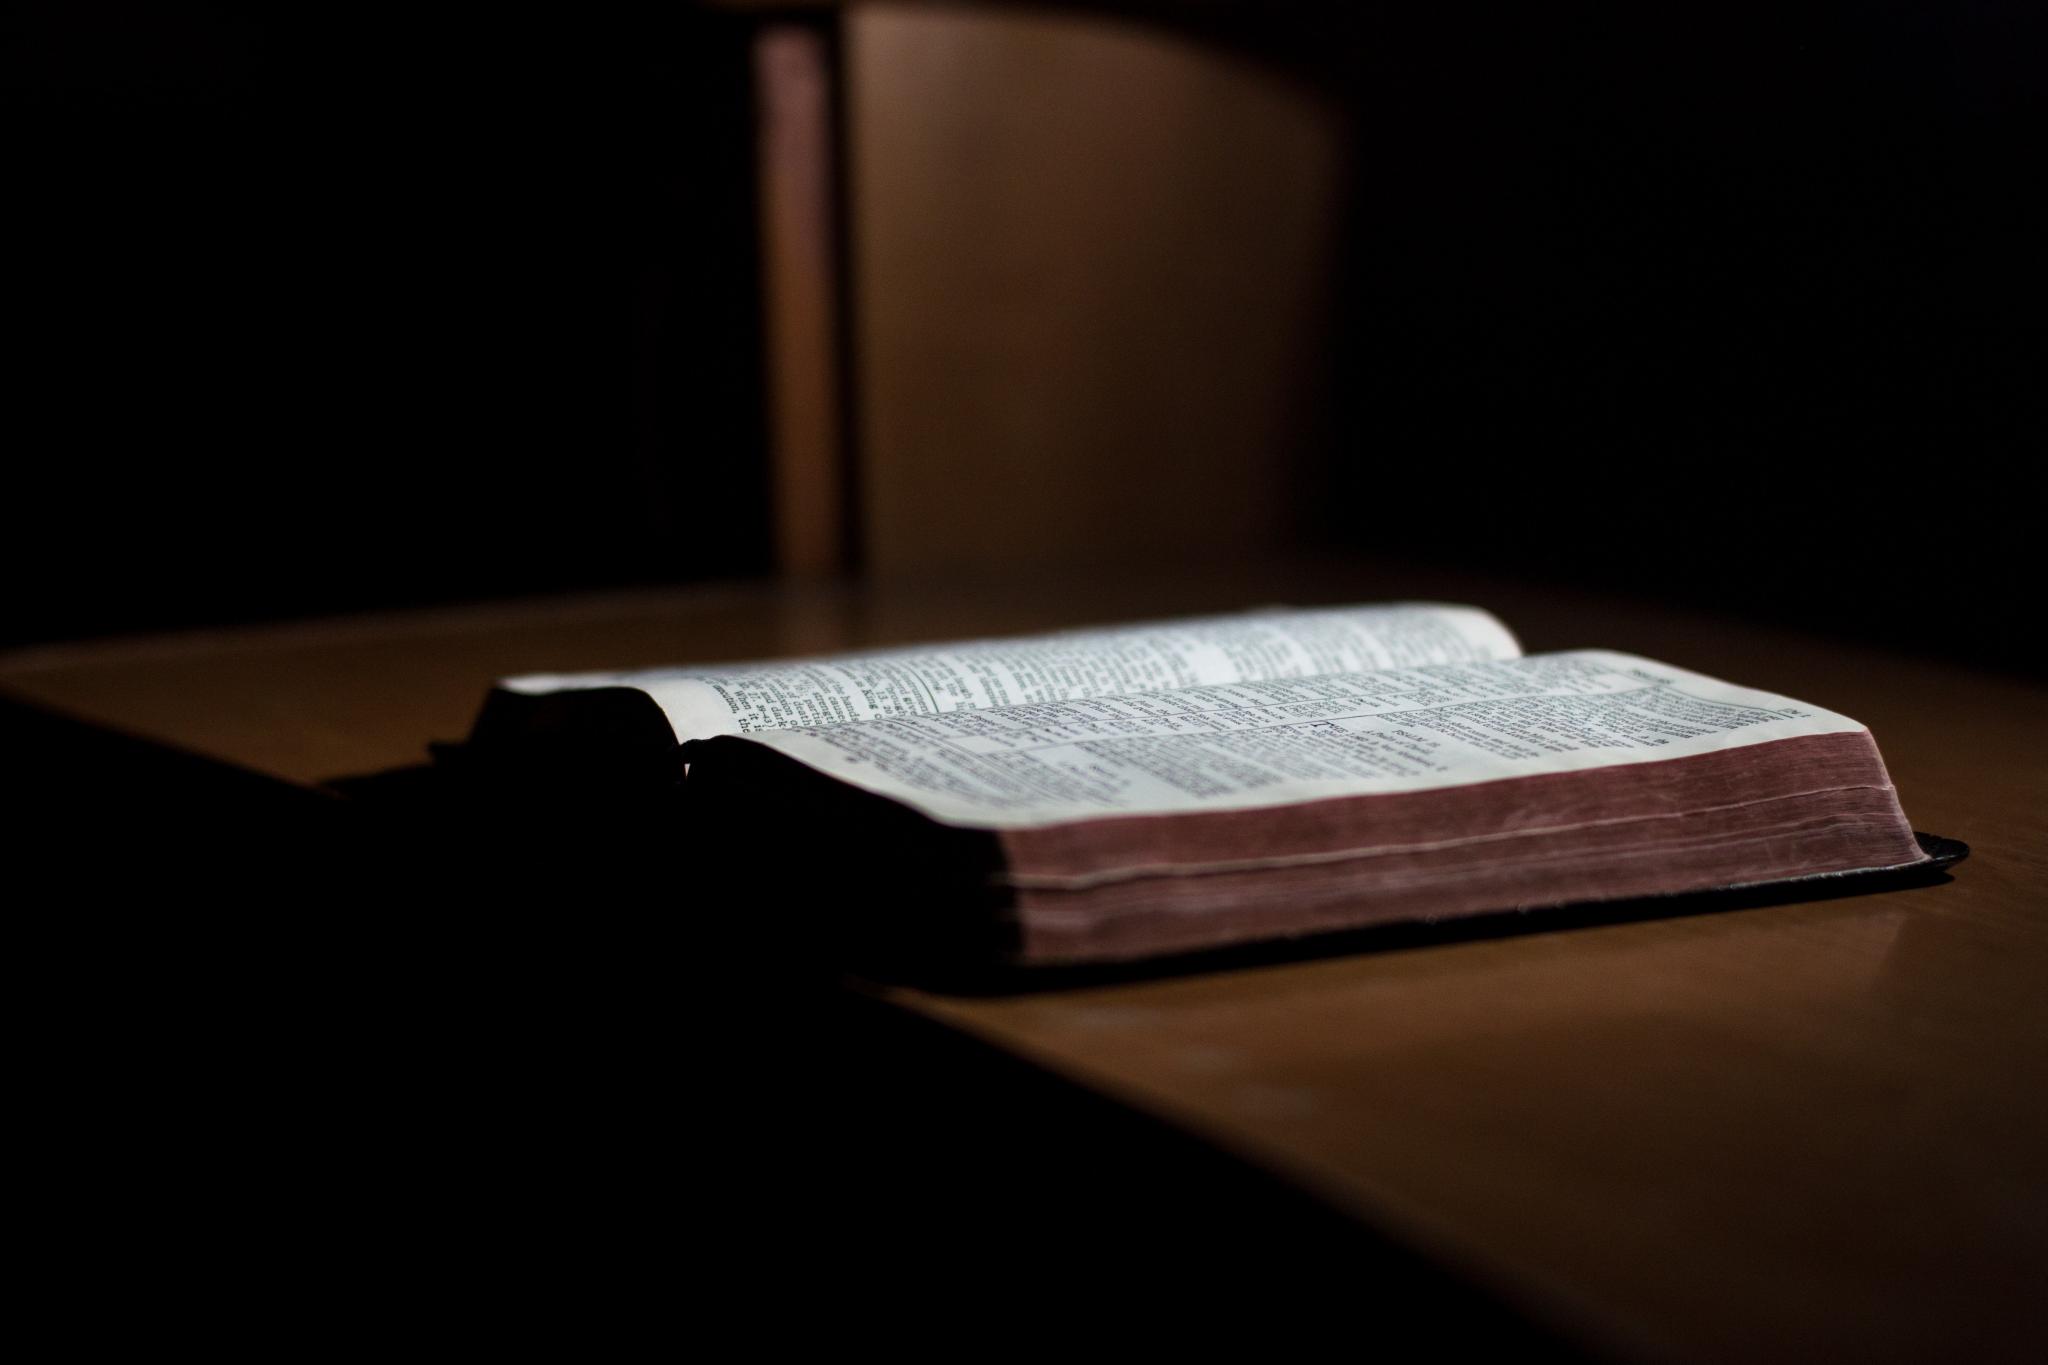 bible open on desk